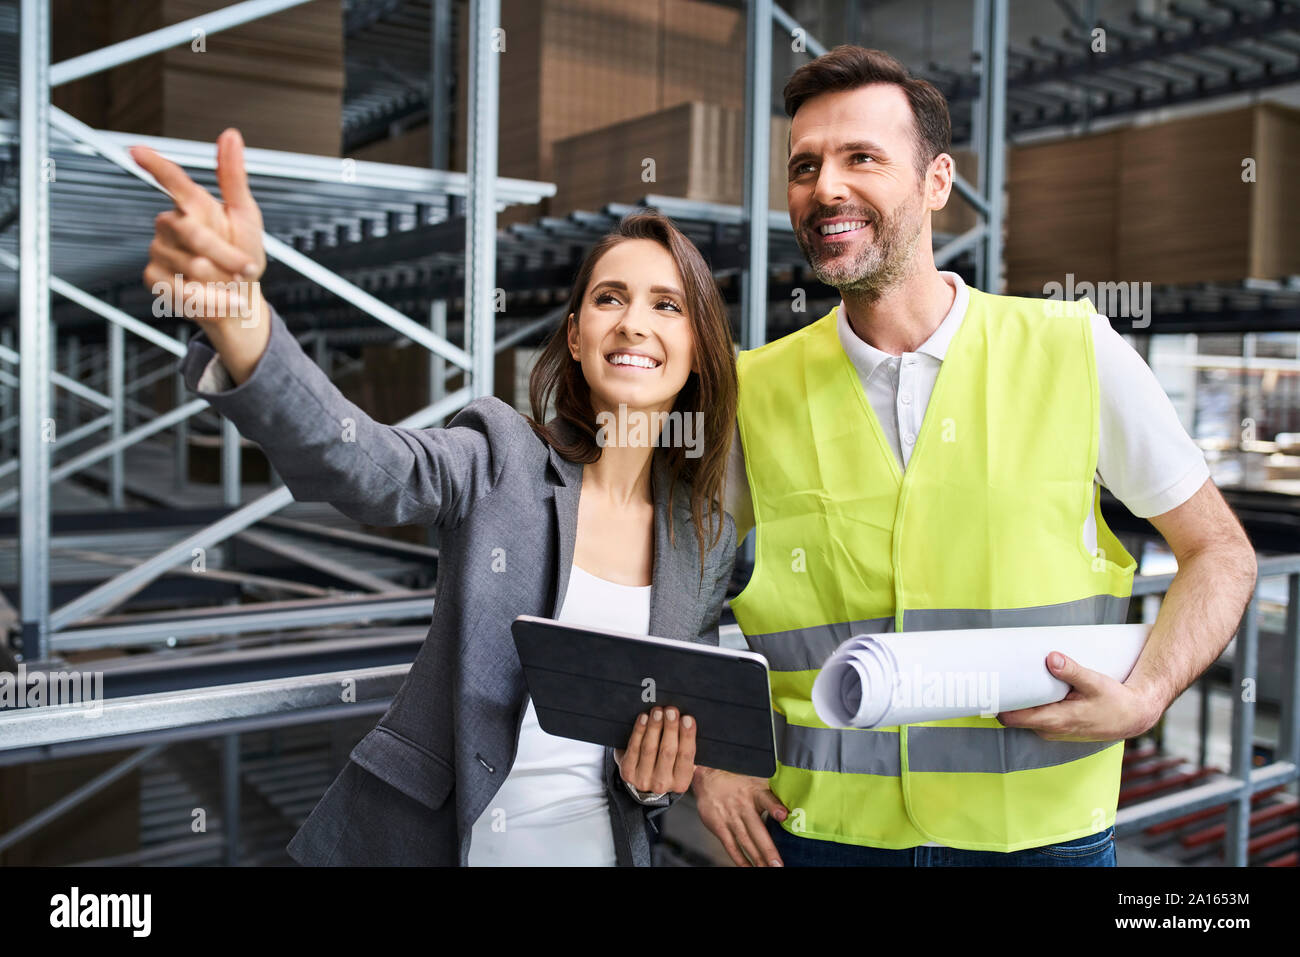 La empresaria sonriente hablar al hombre en chaleco reflectante de una fábrica. Foto de stock